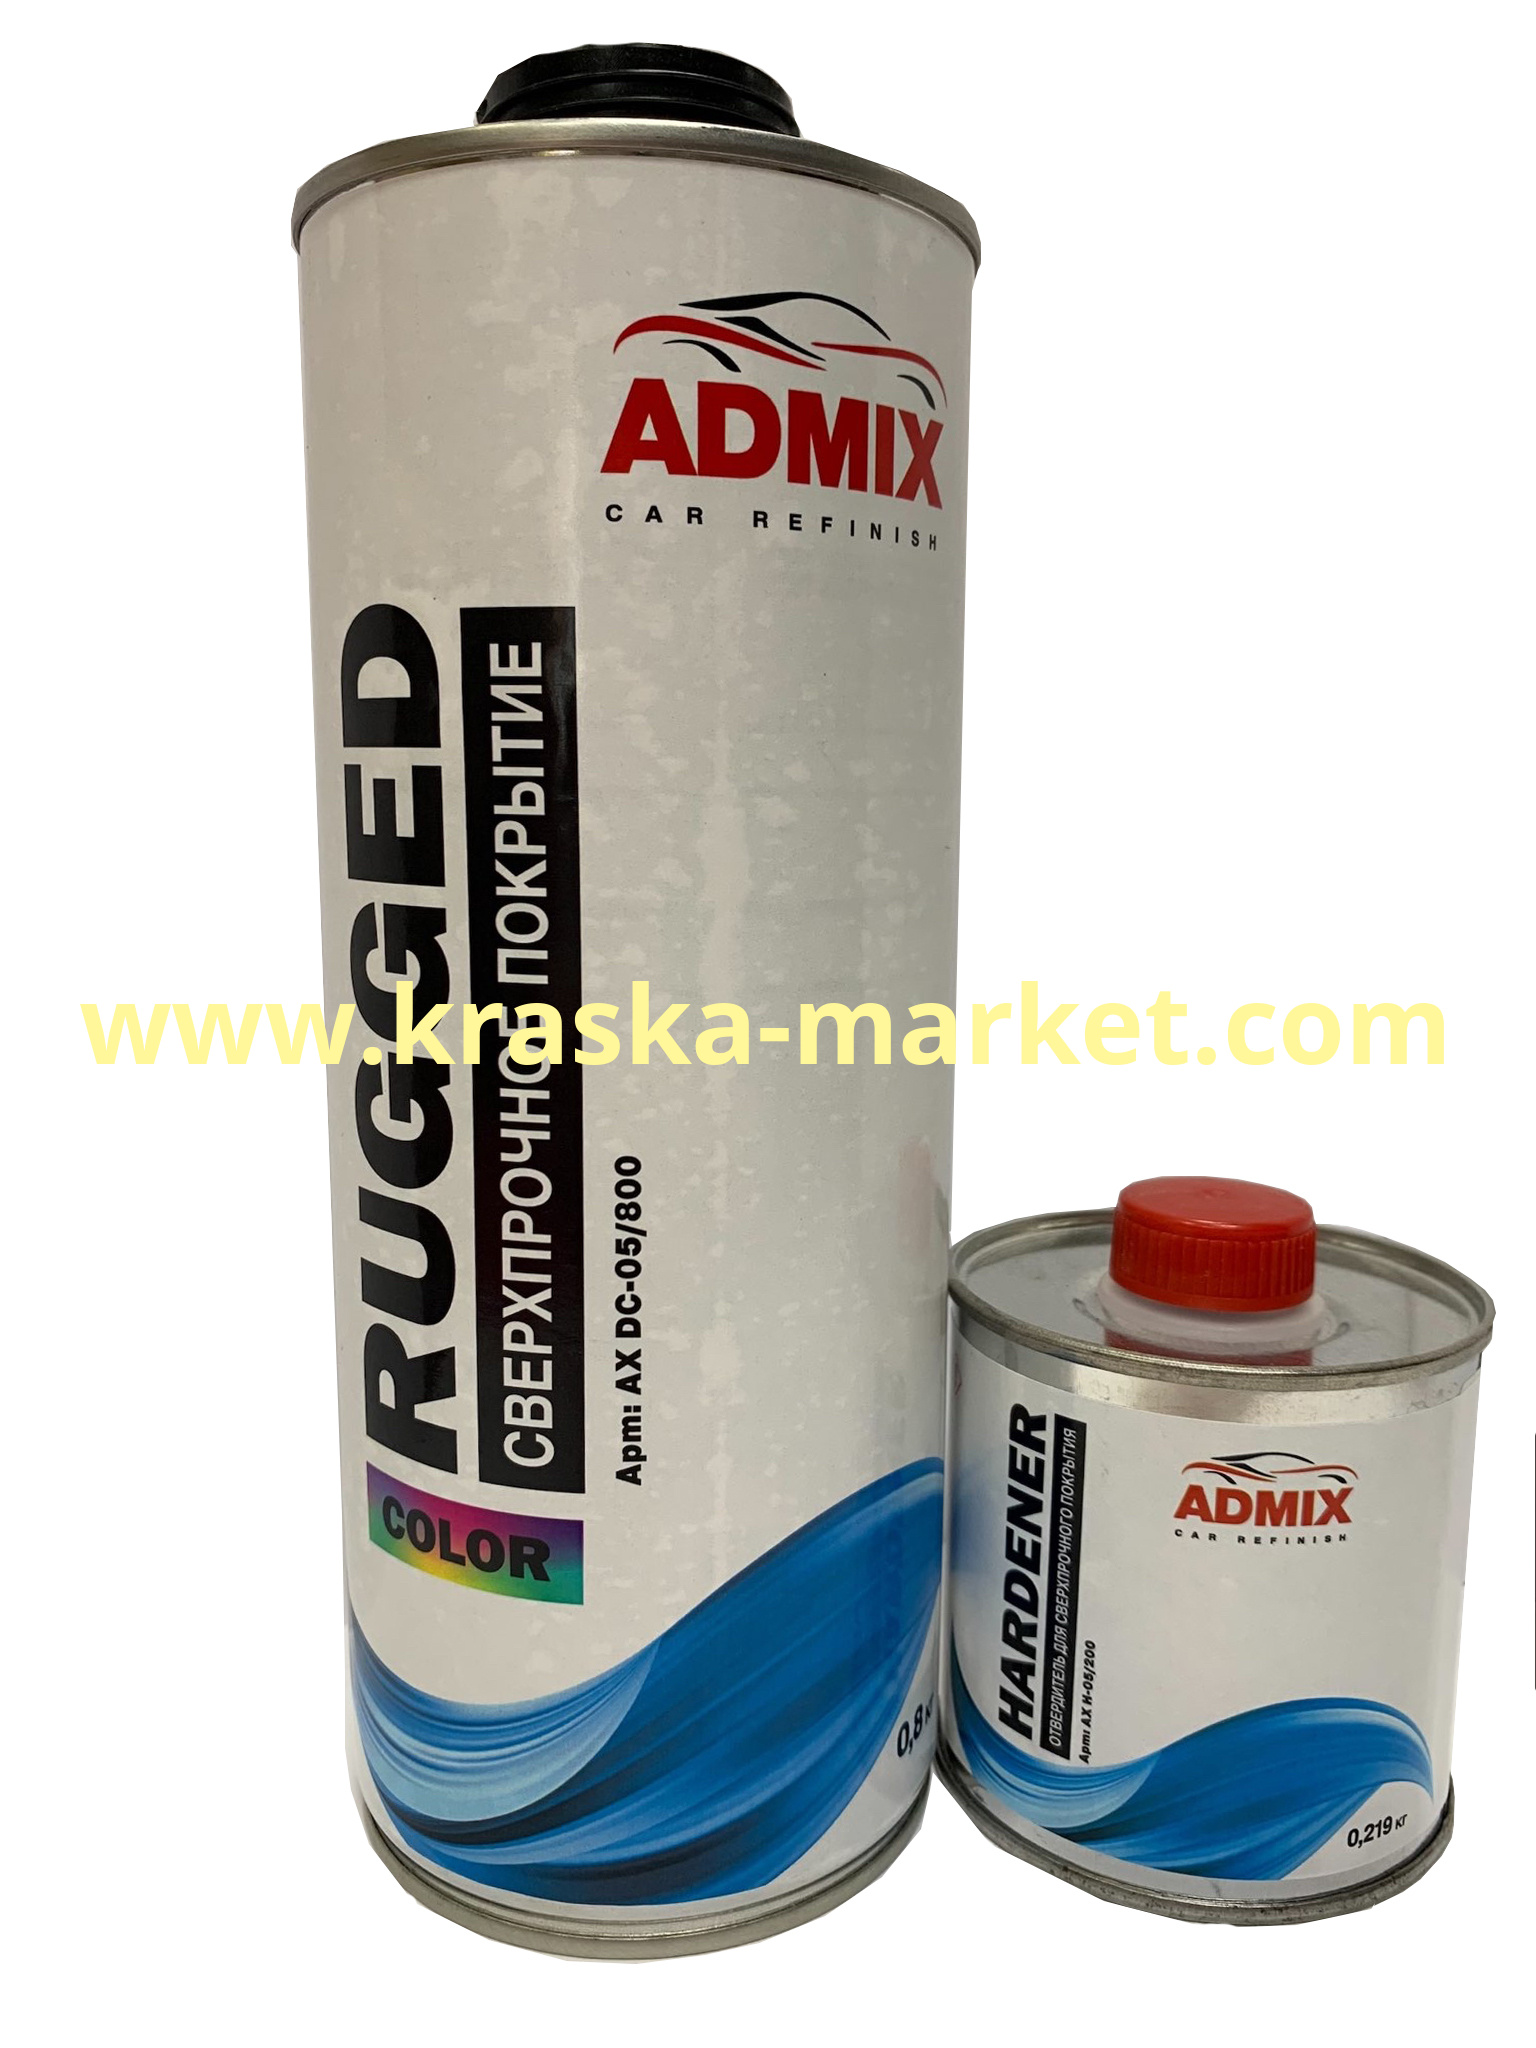 Покрытие ADMIX повышенной прочности. Цвет: черный. Объем(м3): 0,8 + отвердитель 0,219. Торговая марка: ADMIX.